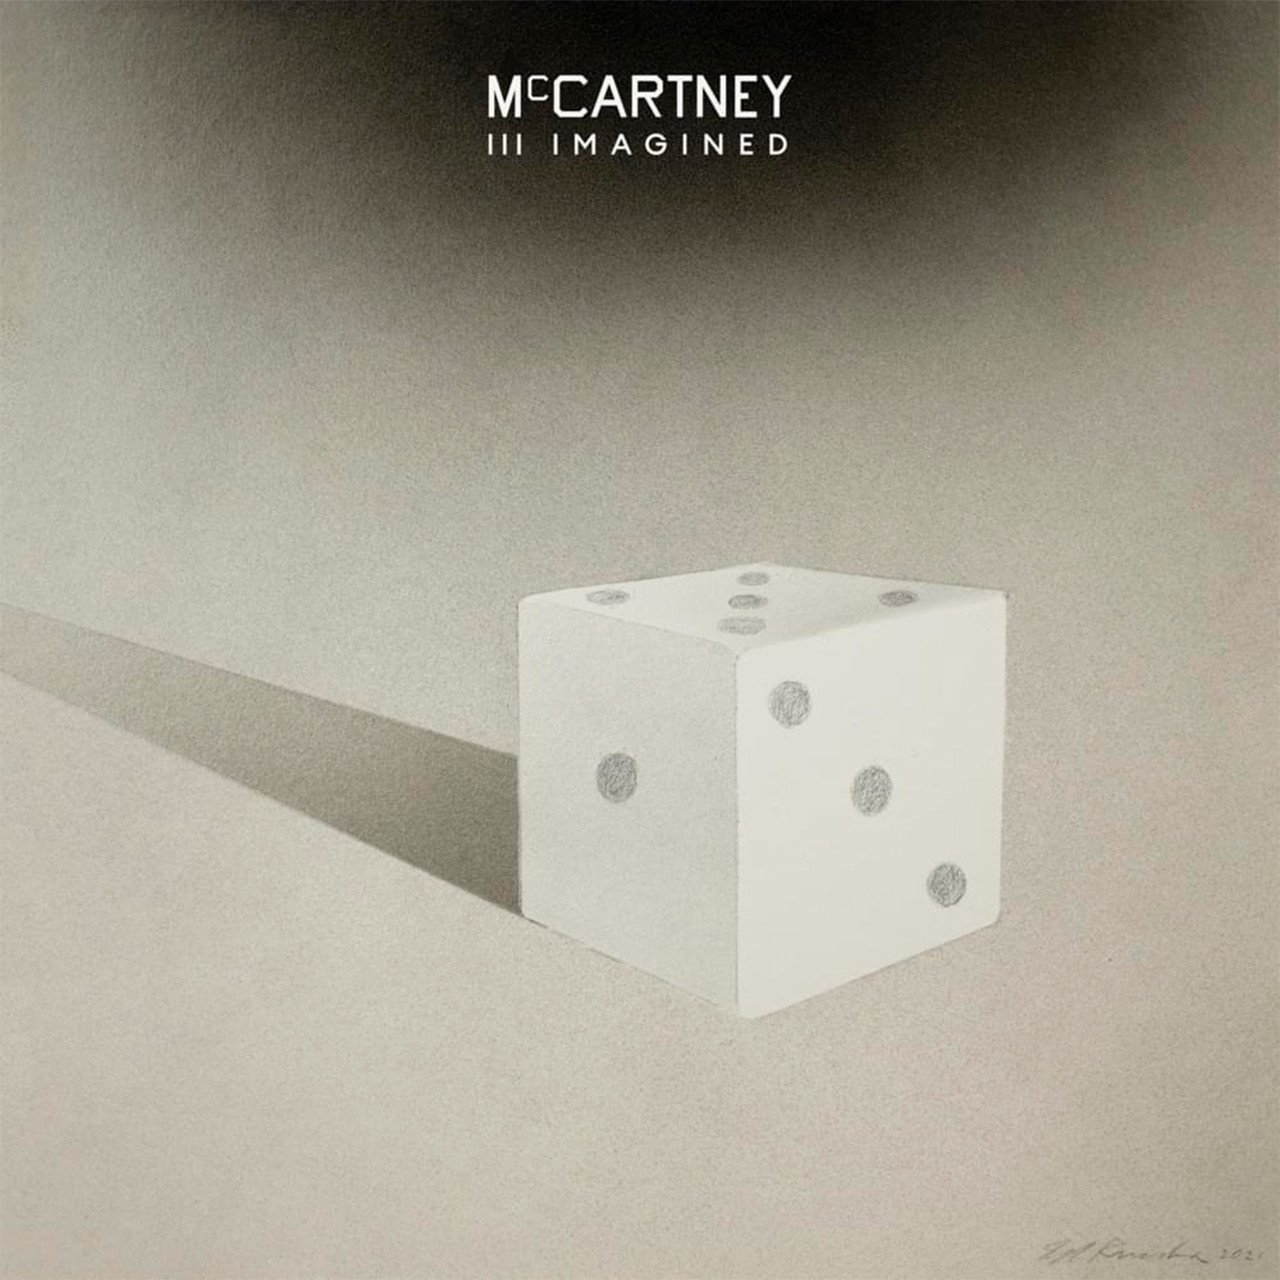 Рок Capitol US Paul McCartney - McCartney III Imagined евангелие дня в 2 х томах 3 е издание протоиерей шаргунов александр иванович